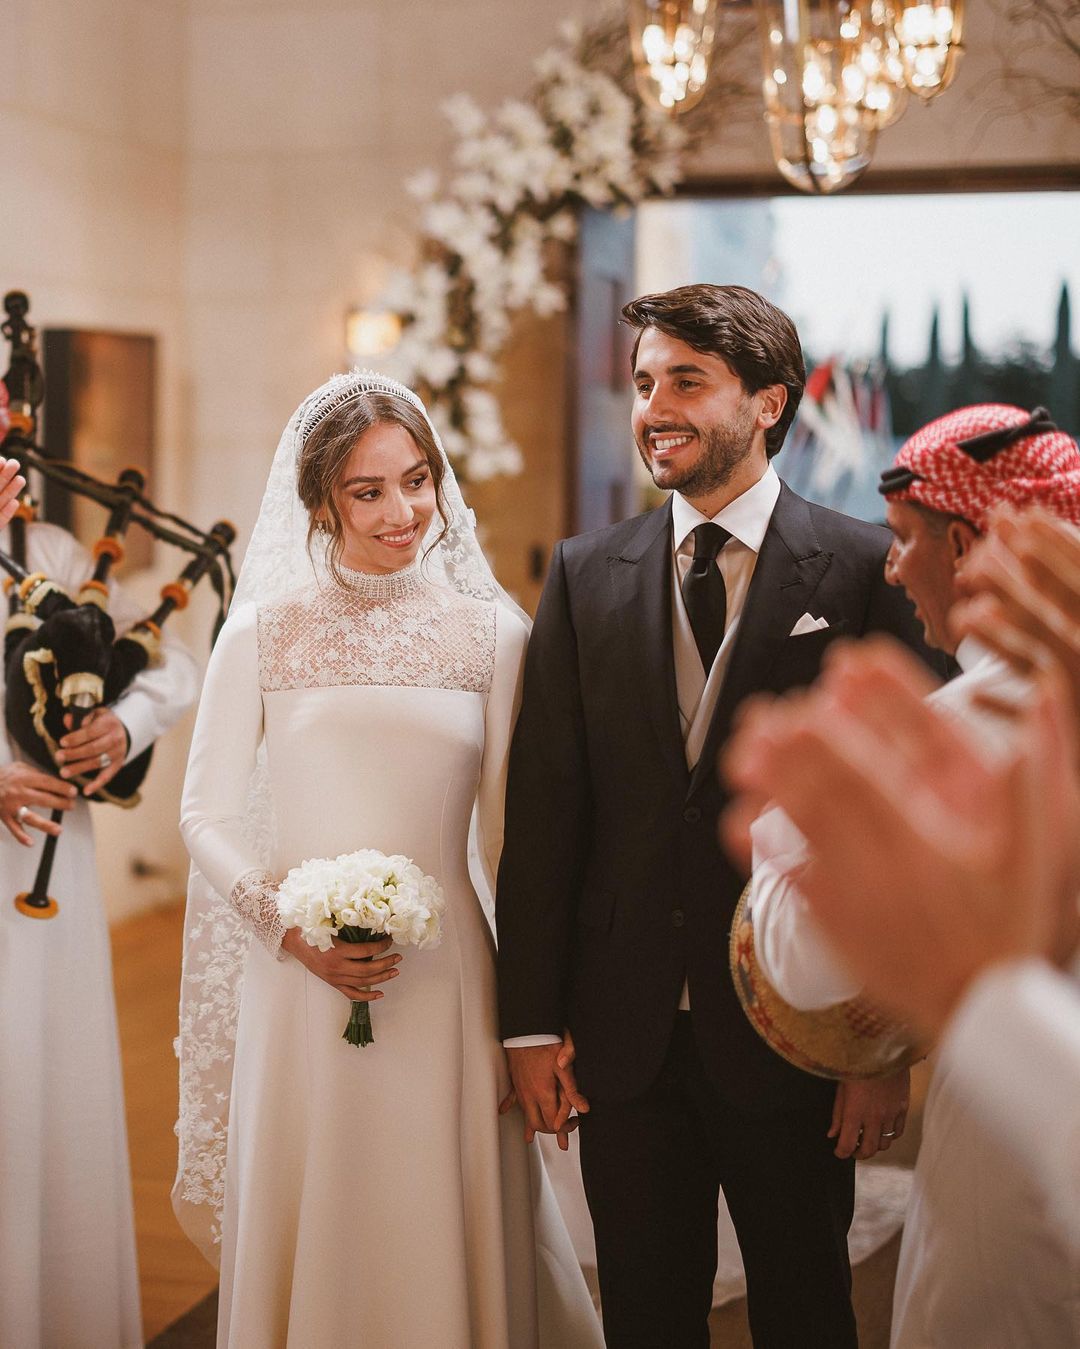 Дочь королевы Рании вышла замуж: рассматриваем фото со свадьбы